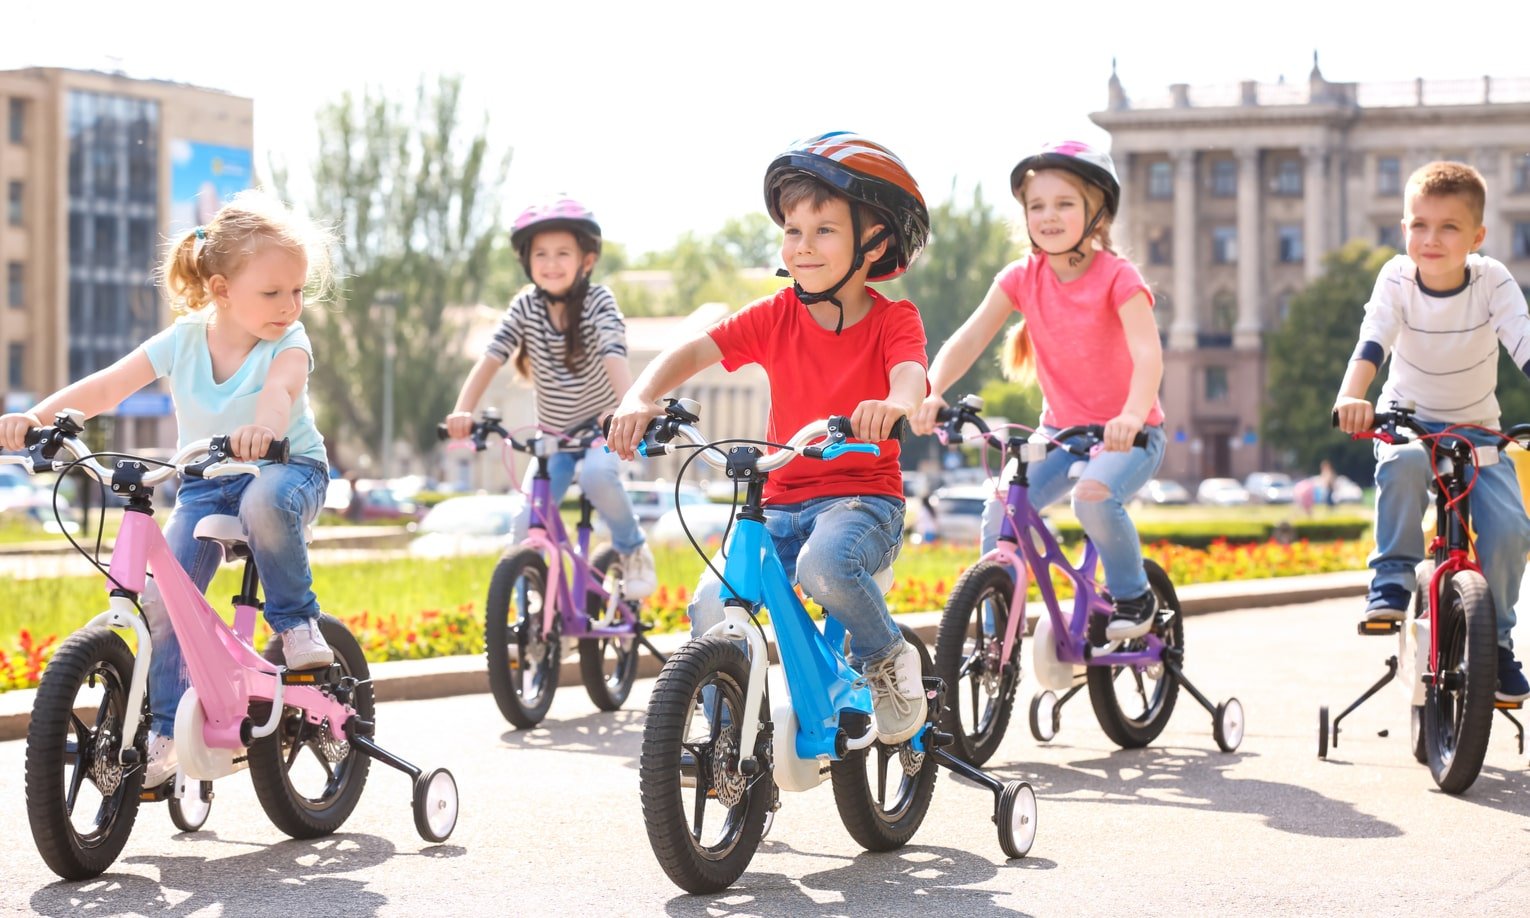 vaikai vaziuoja dviraciais parke